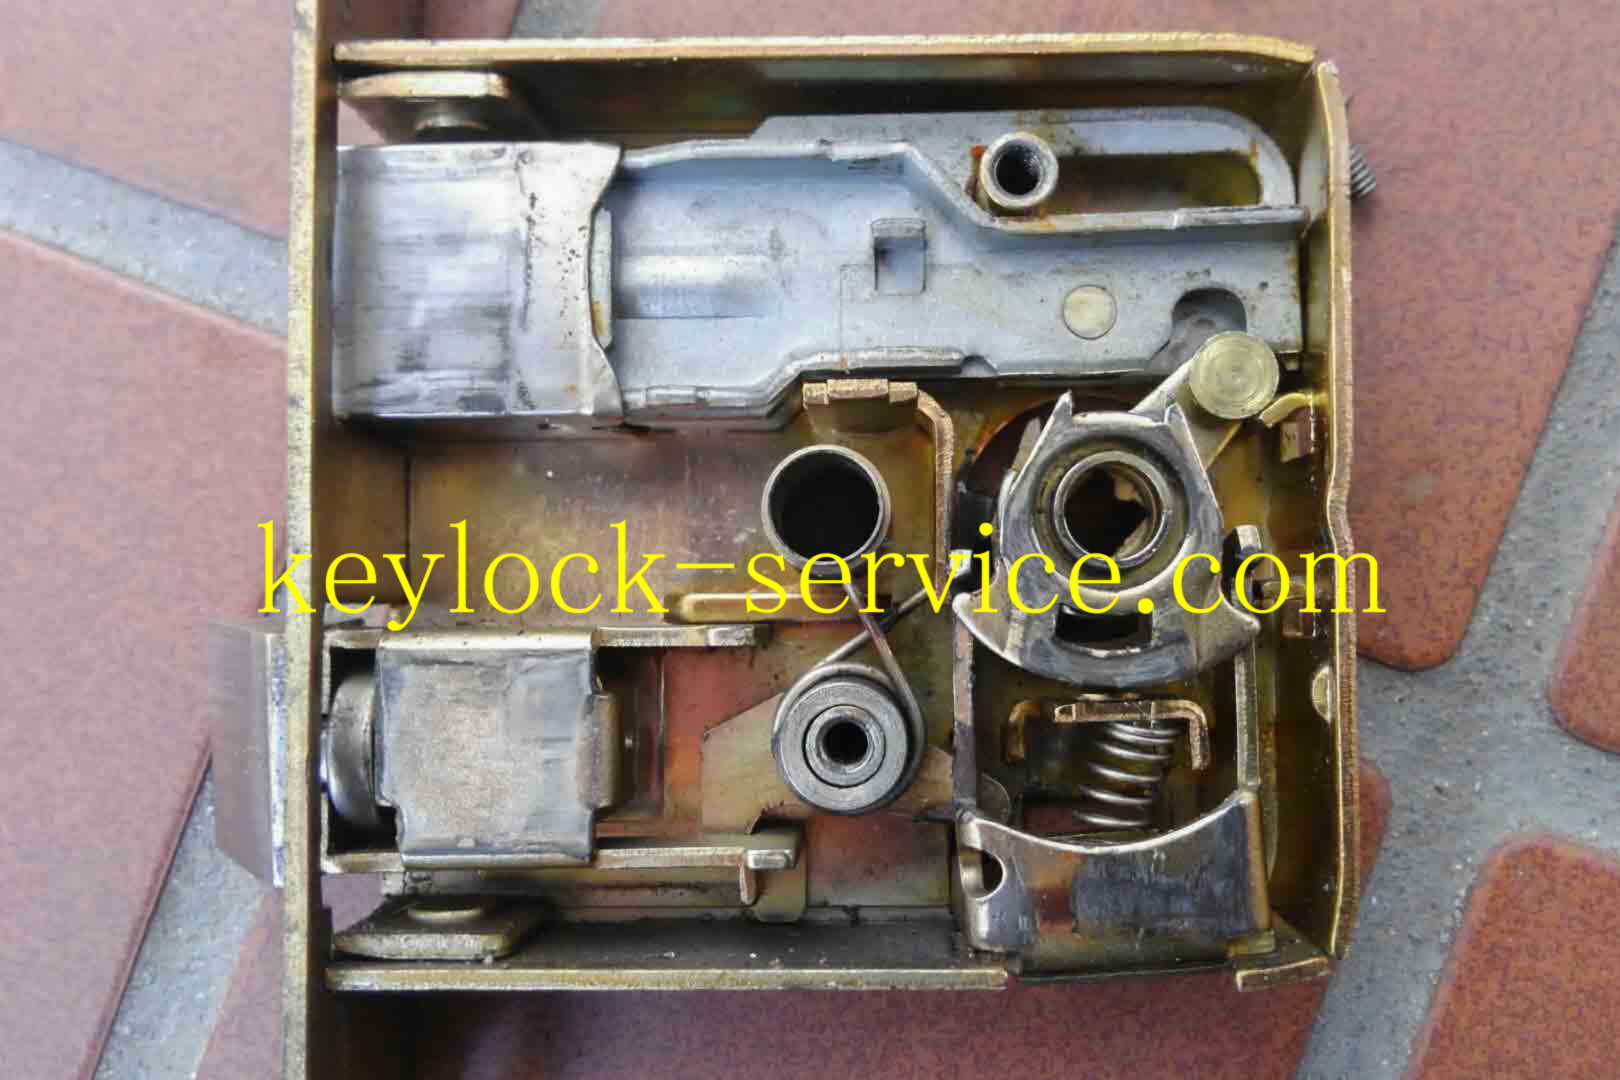 シリンダーや錠の故障修理。固着やバネが折損しして動かなくなった錠前を分解し、修理します。滋賀県守山市の鍵屋  キー・ロック・サービス